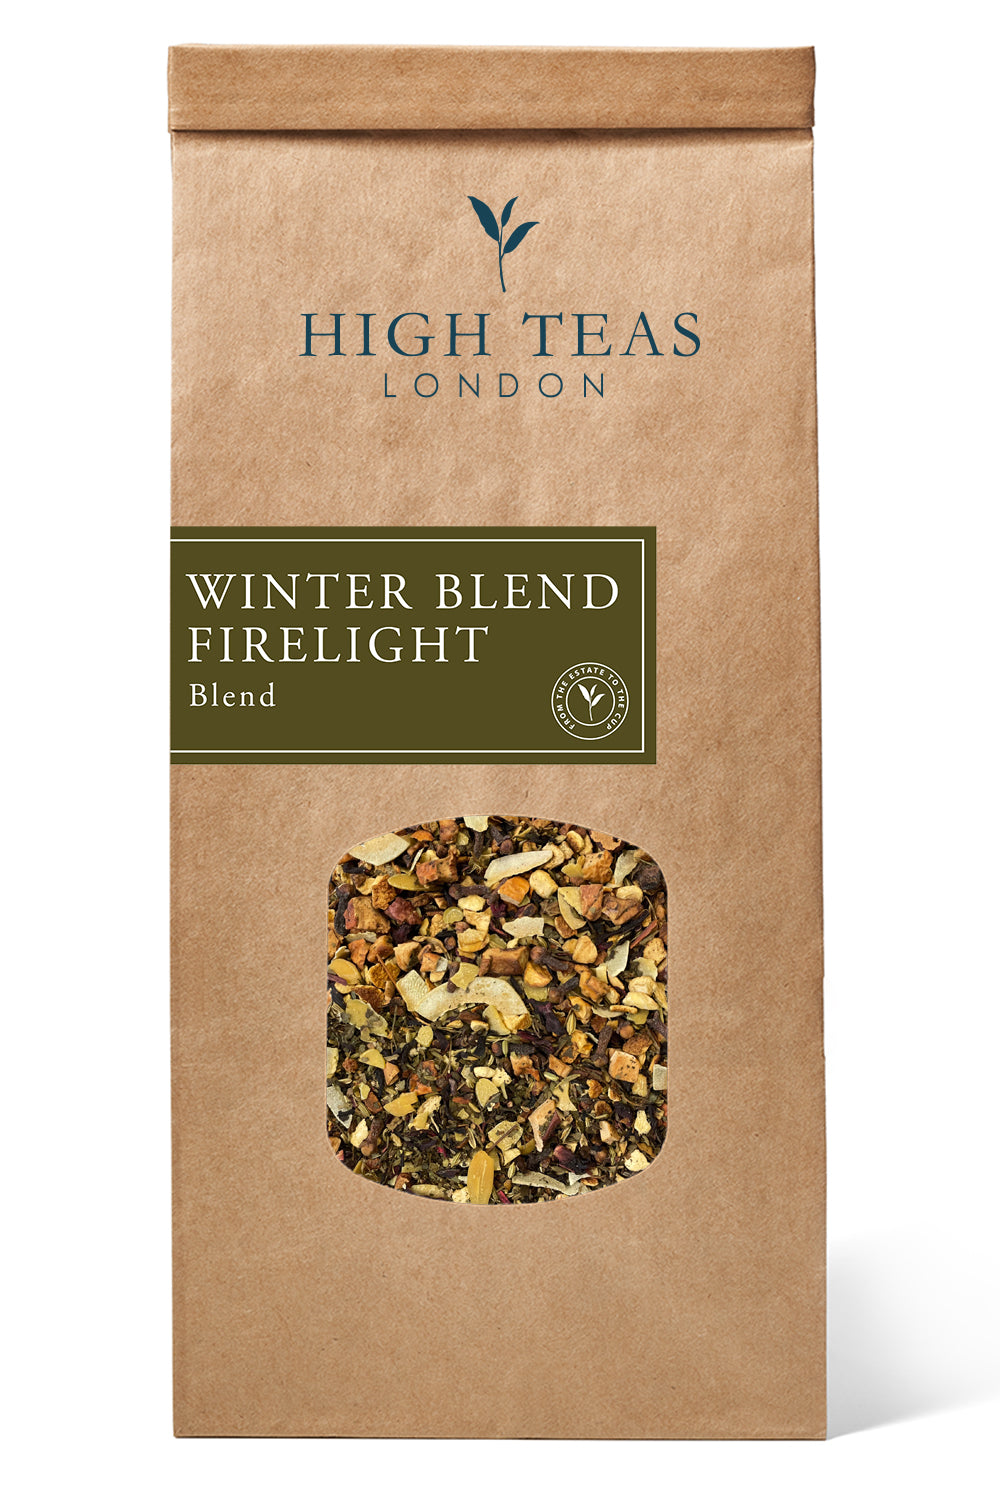 Winter Blend Firelight-250g-Loose Leaf Tea-High Teas